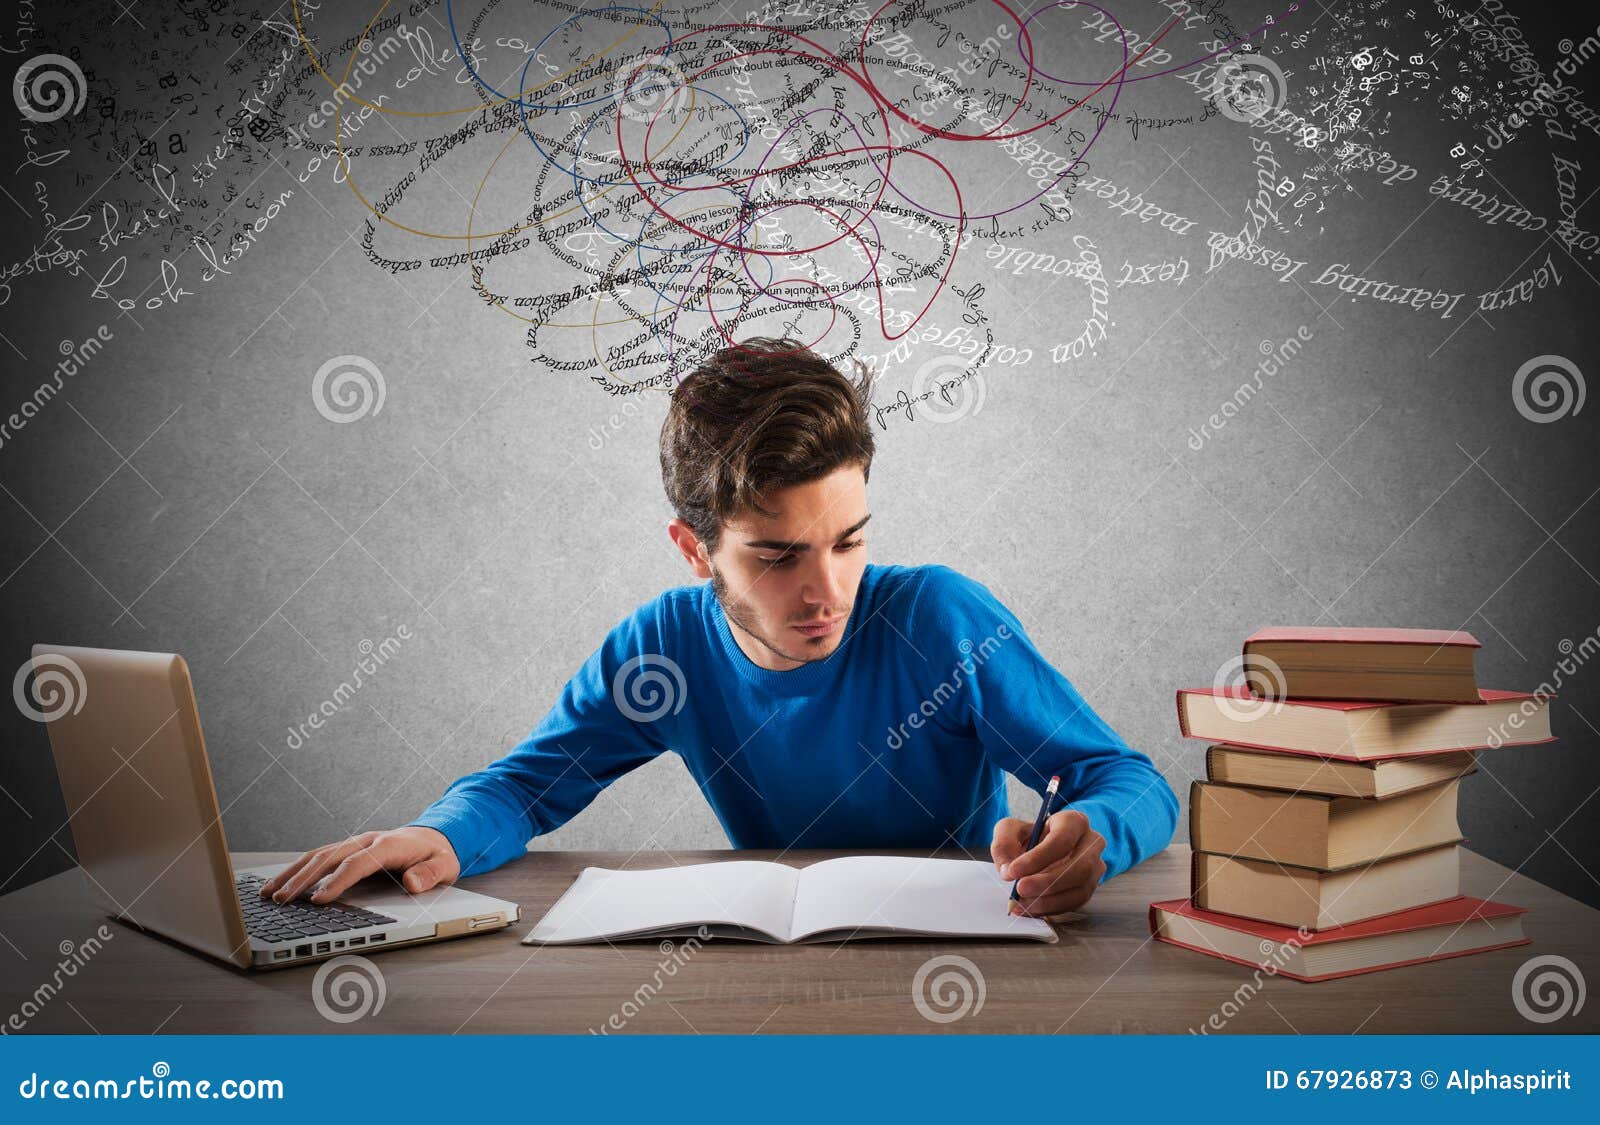 Большинство людей исследуют. Компьютер и книги. Студент с книгами. Человек с книгой и компьютером. Усердный ученик.